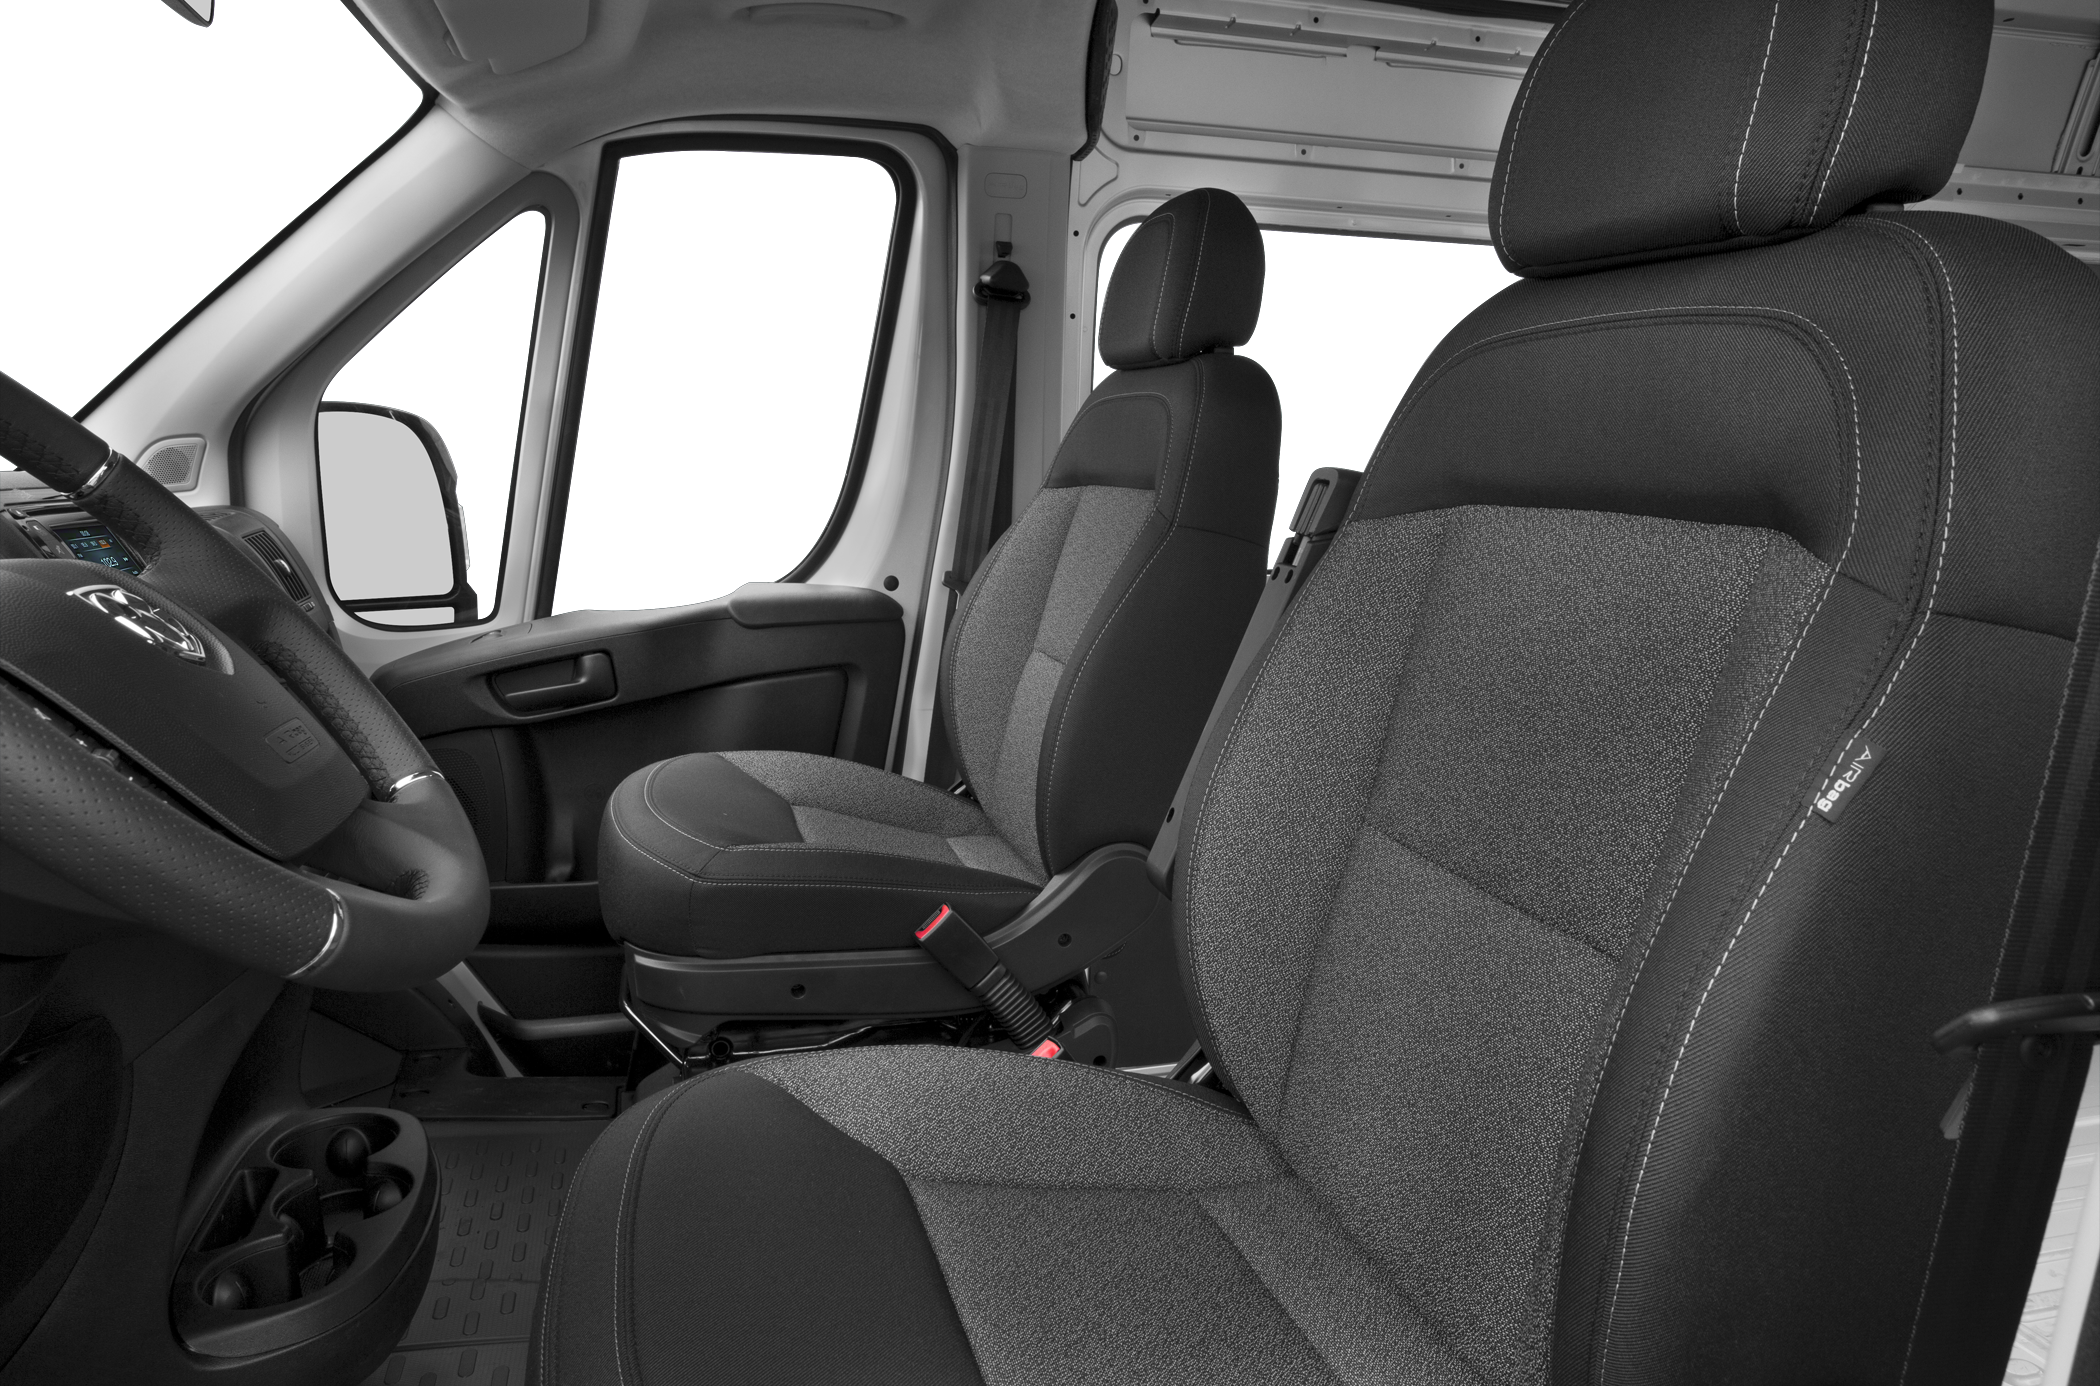 2015 RAM ProMaster 2500 Window Van